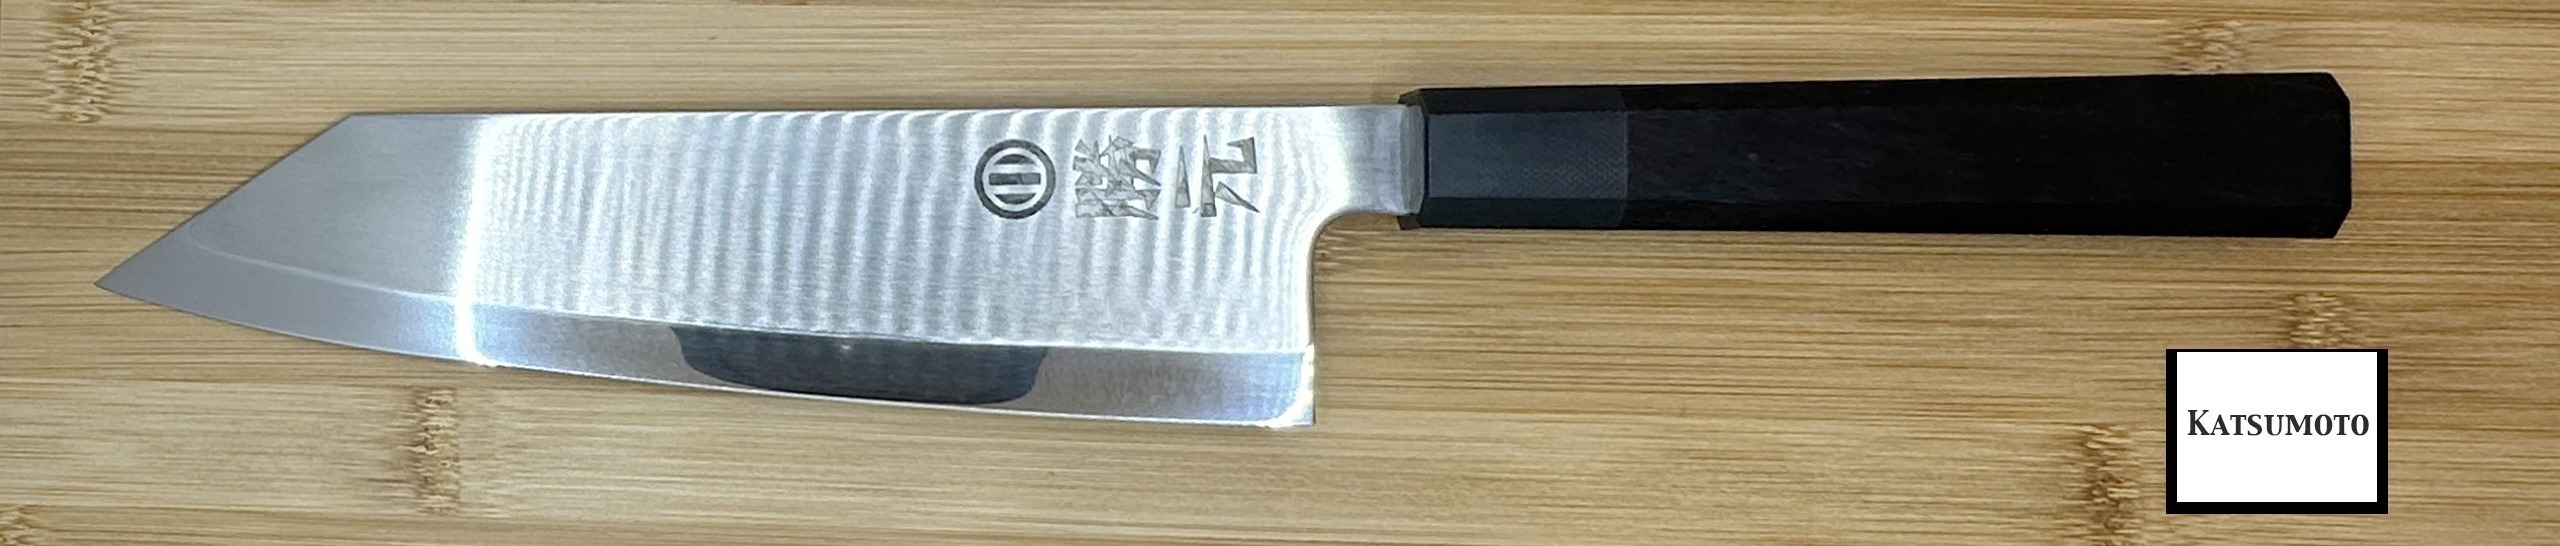 couteau japonais de cuisine katsumoto